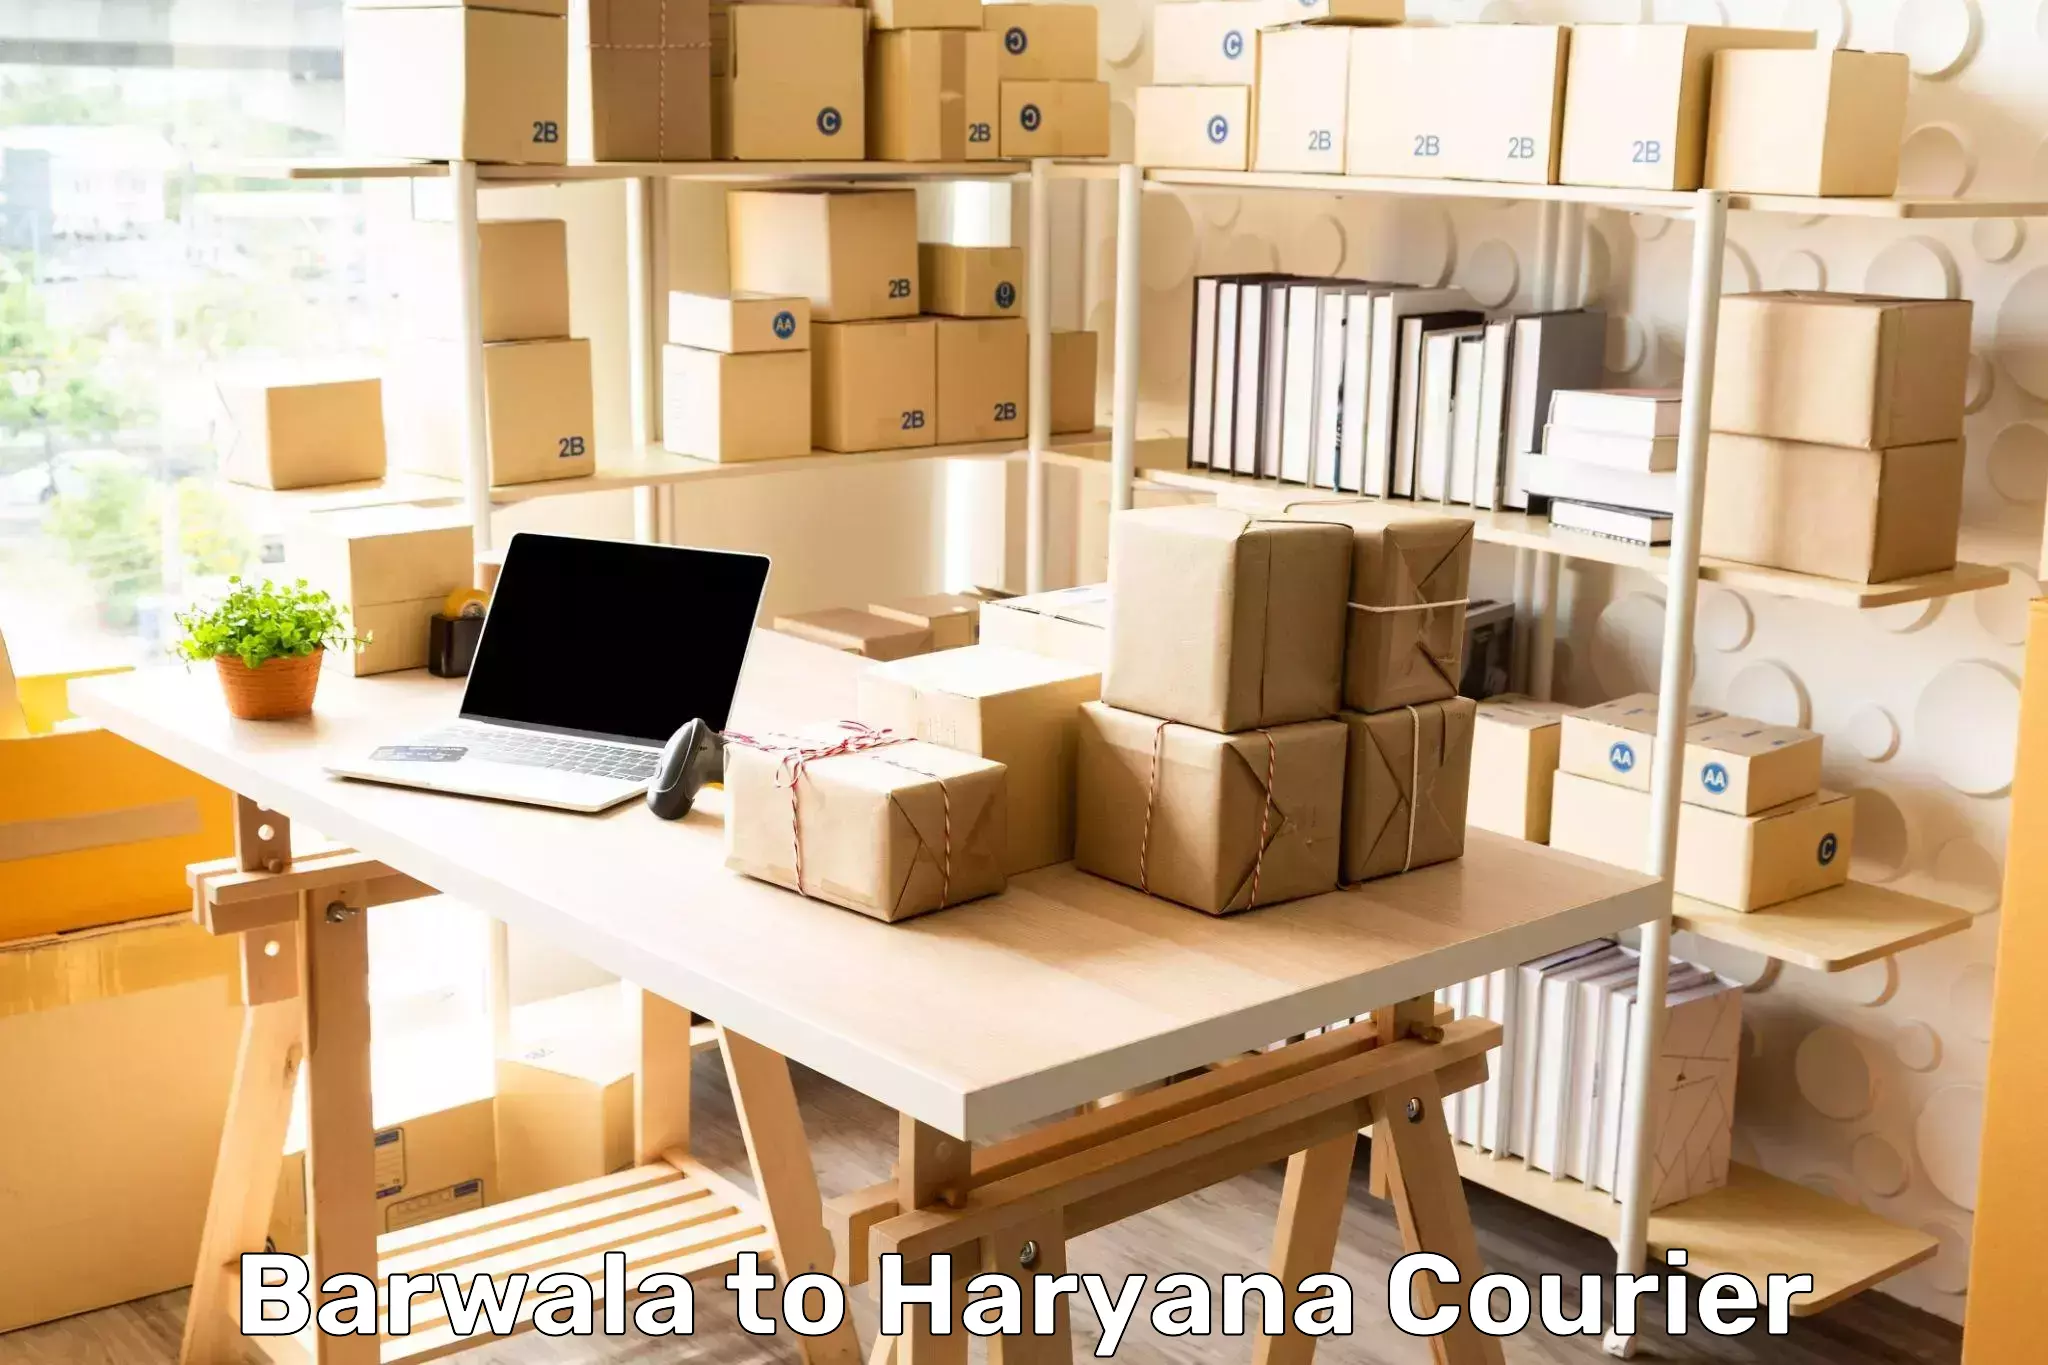 Courier service partnerships Barwala to Chaudhary Charan Singh Haryana Agricultural University Hisar